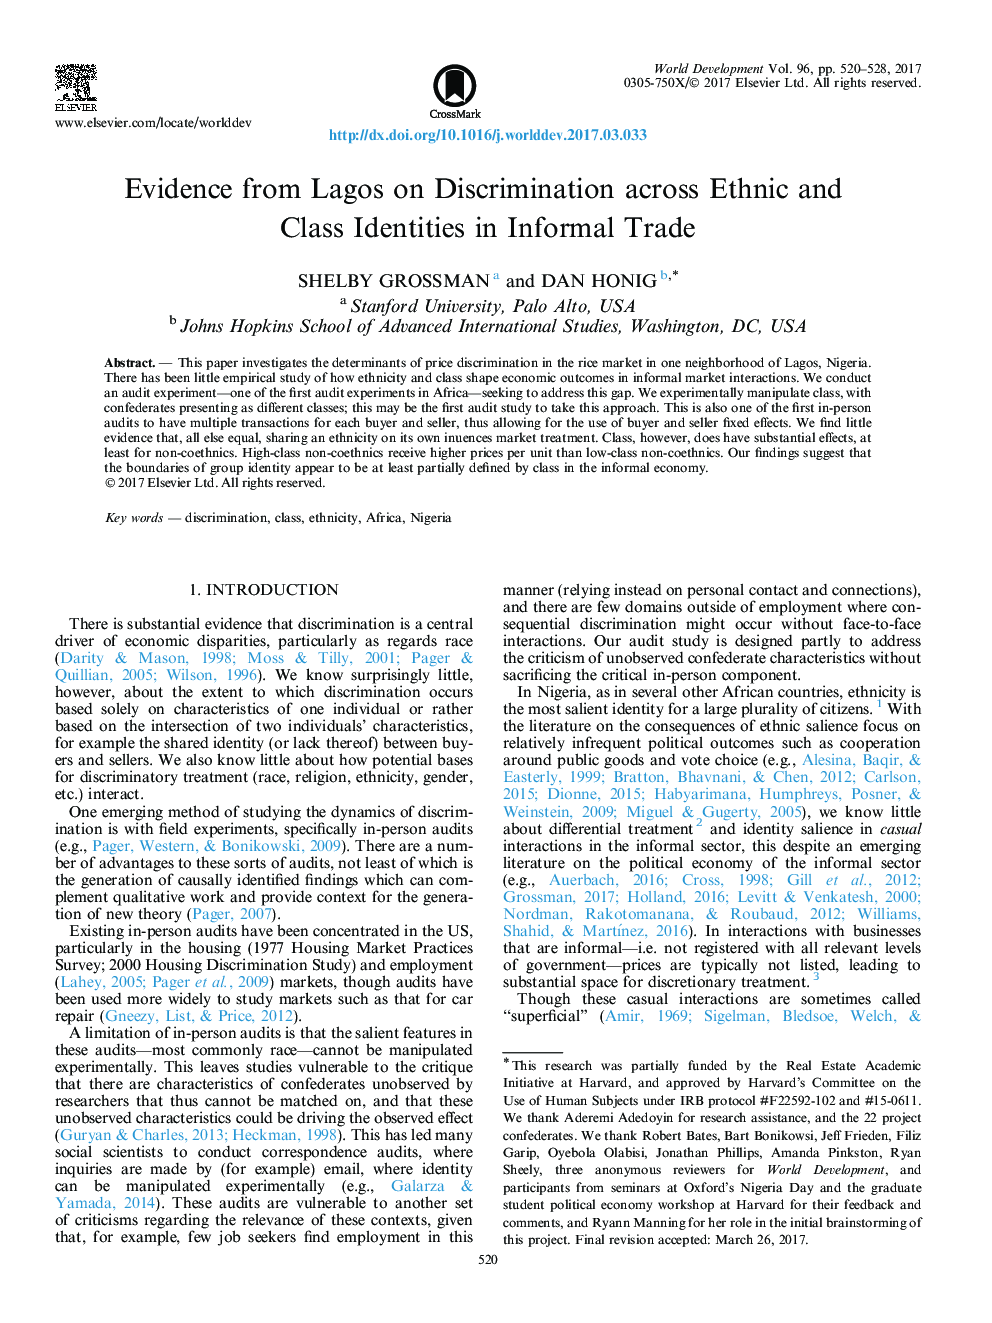 شواهد از لاگوس درباره تبعیض در میان هویت های قومی و کلاسیک در تجارت غیر رسمی 